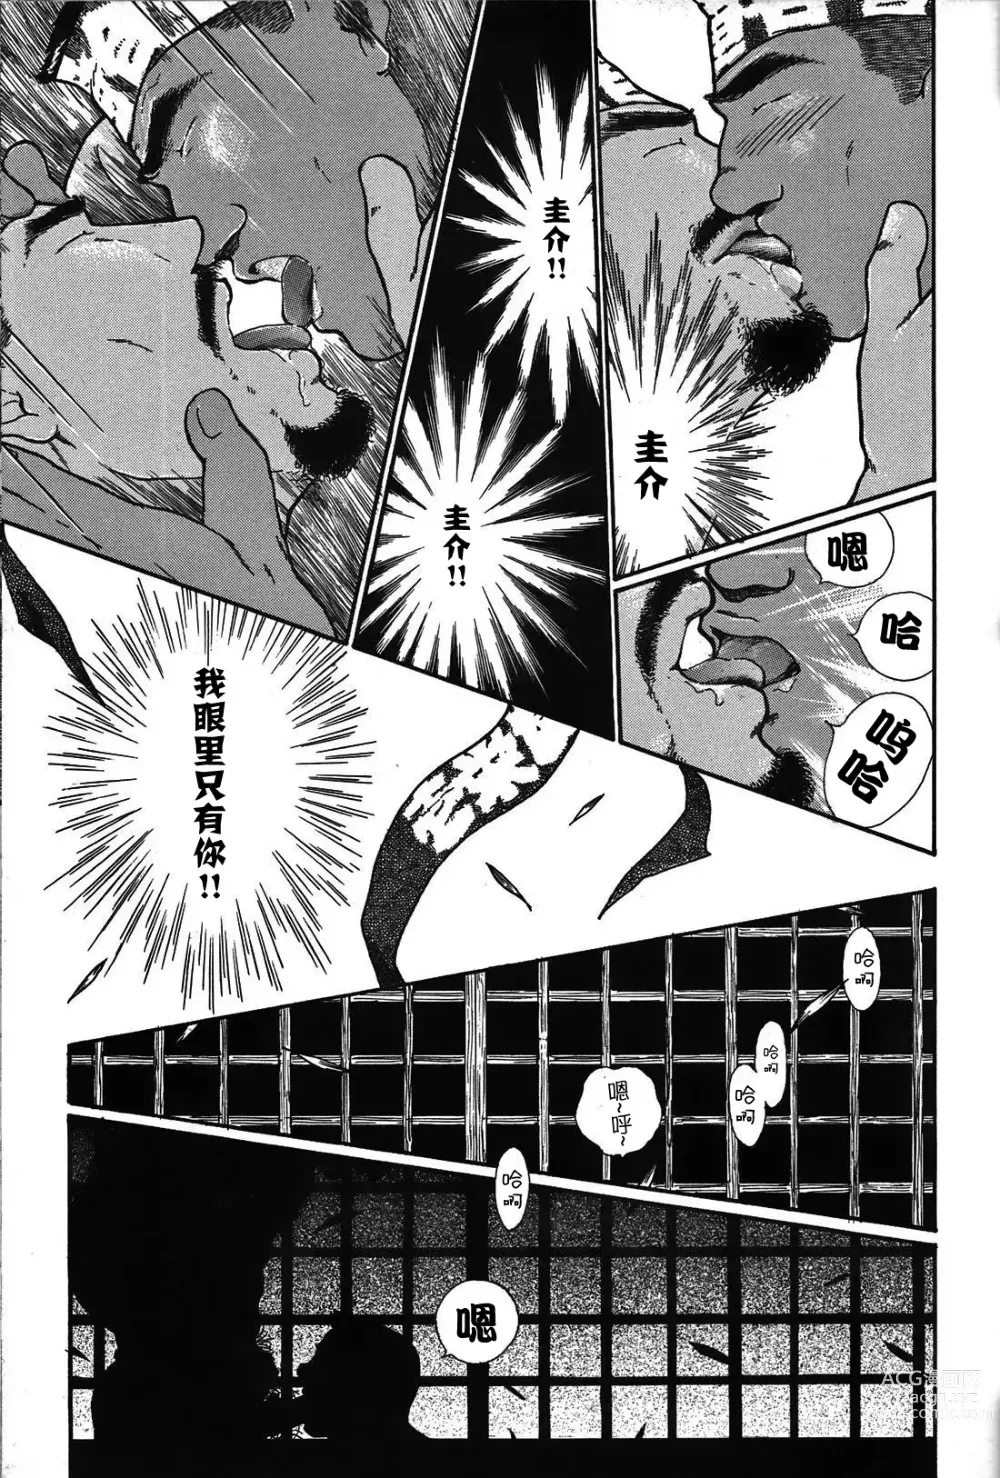 Page 38 of manga 纯情-第一章-纯情!!